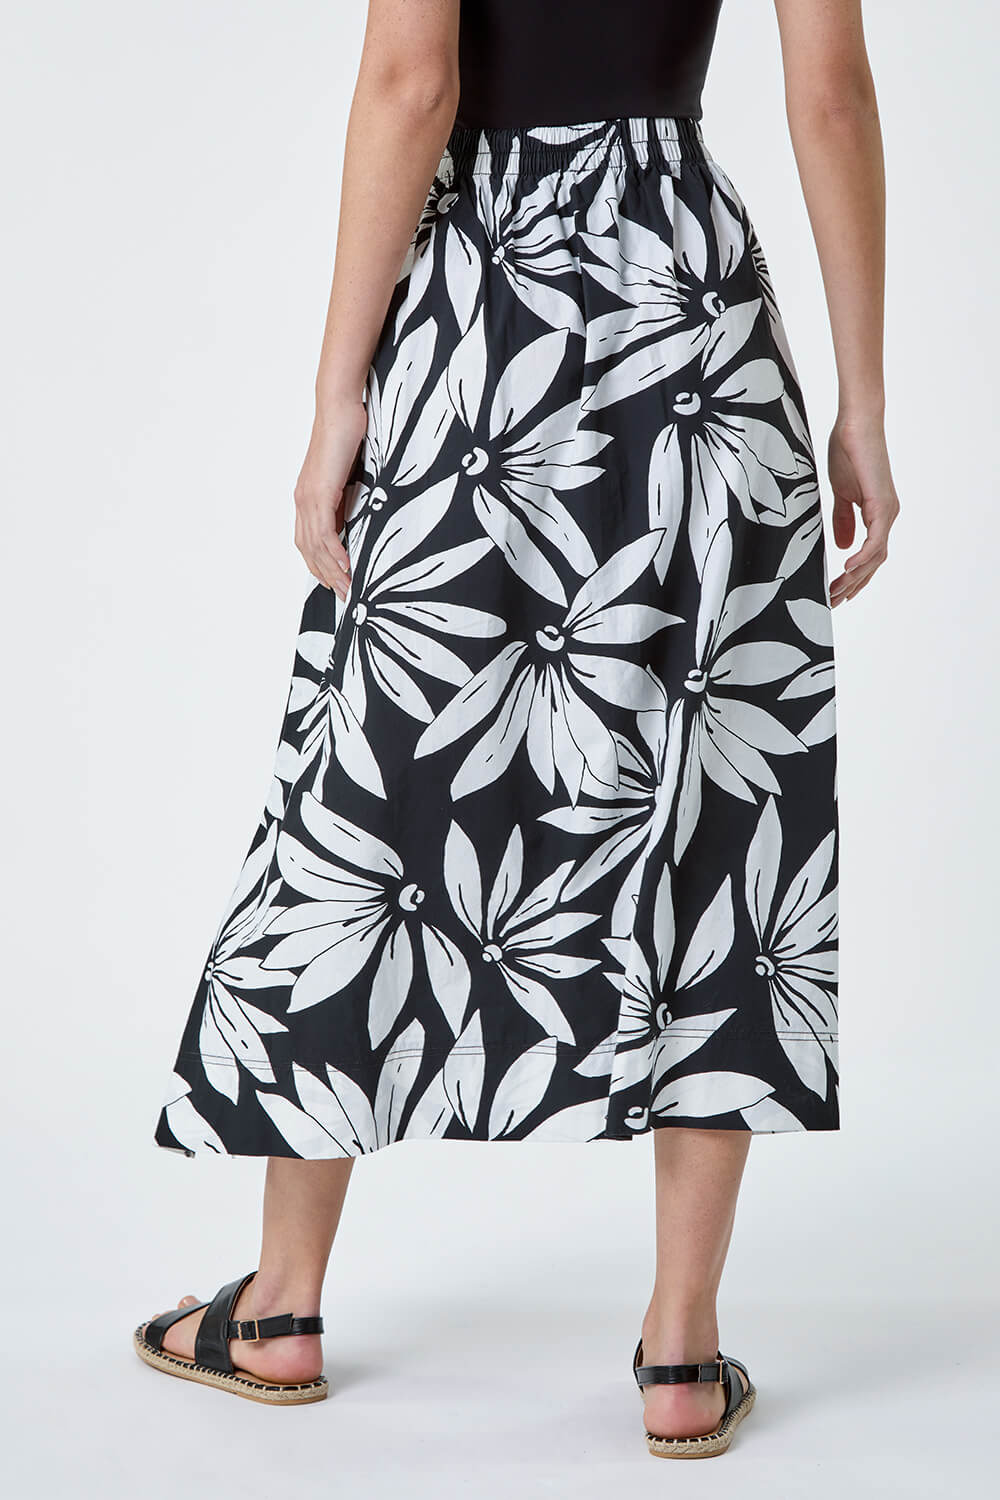 Black Floral Cotton Poplin Pocket Skirt, Image 3 of 5